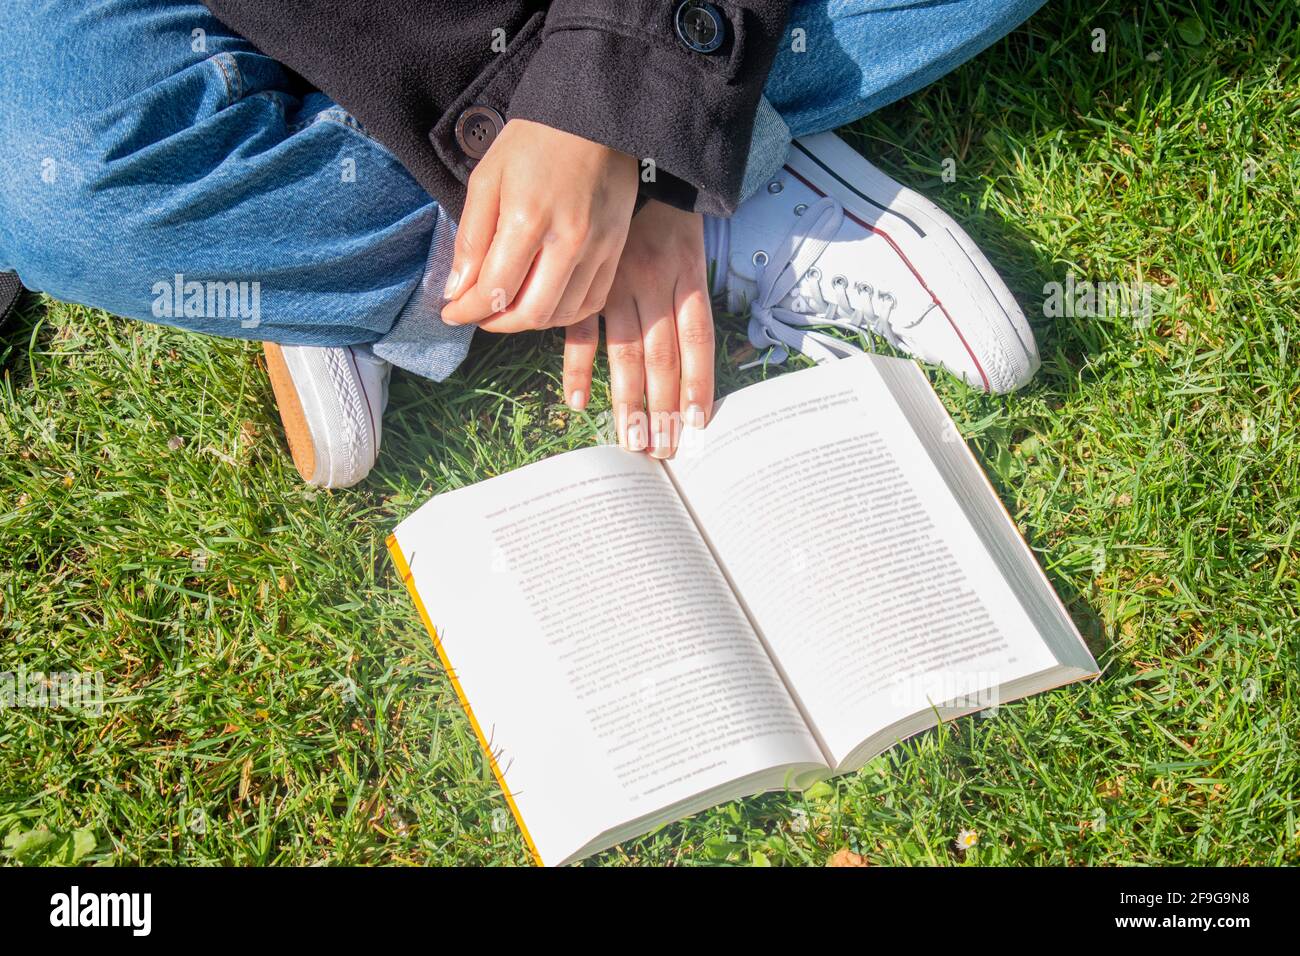 Draufsicht auf eine Person ohne Identität, die ein Buch auf dem Gras mit gekreuzten Beinen liest. Stockfoto